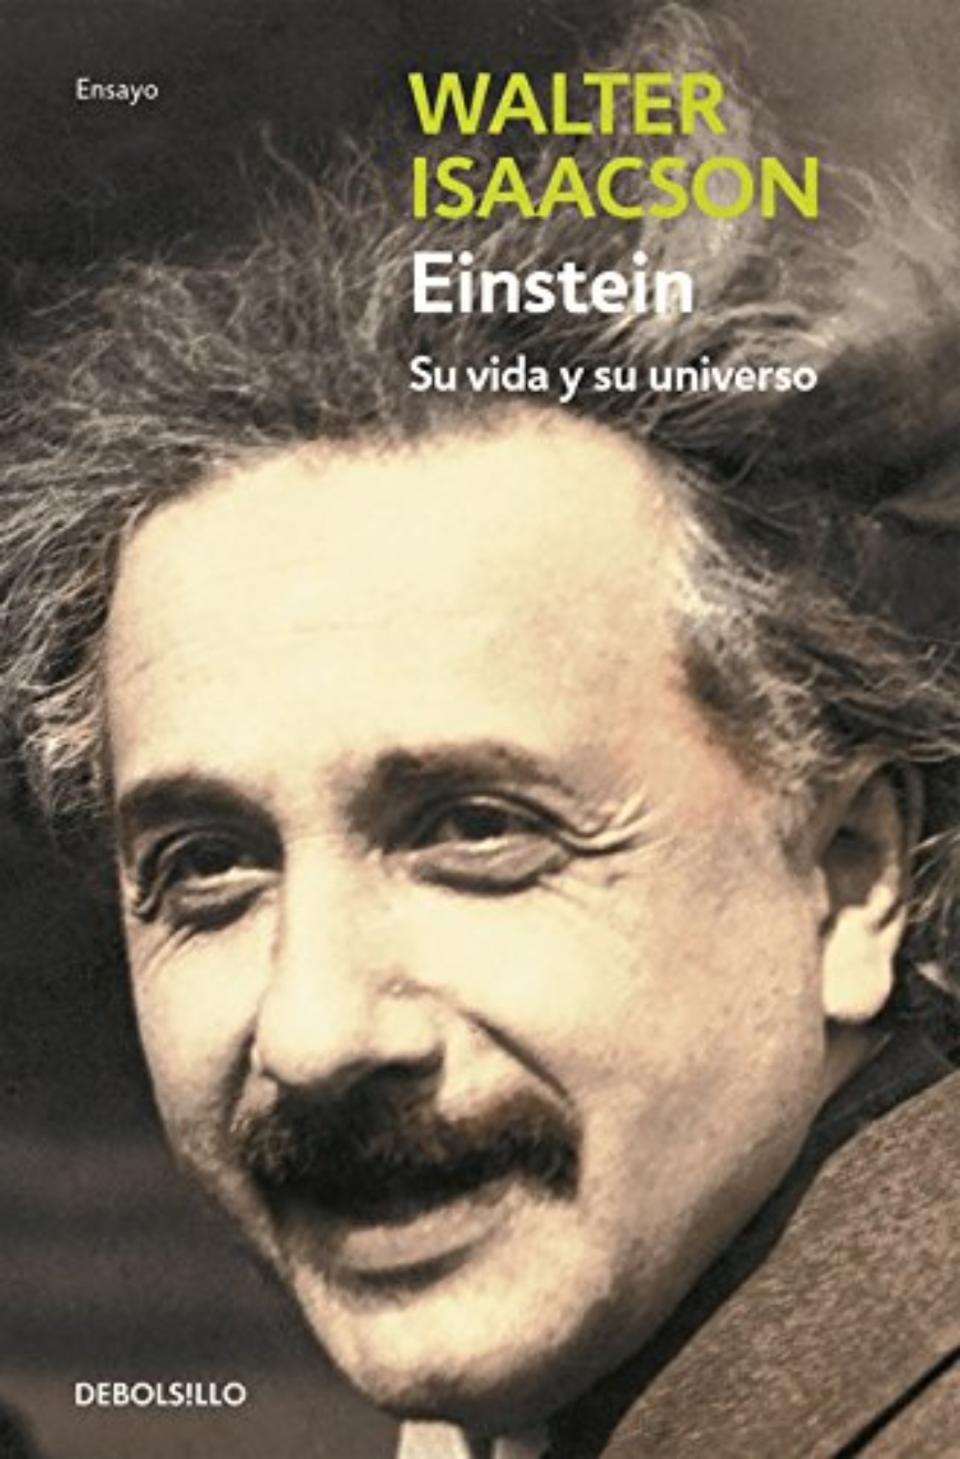 Elon Musk es un gran seguidor de las biografías de Walter Isaacson. Además de la Franklin, recomienda esta sobre Albert Einstein que se centra en las cartas personales del científico alemán y se adentra en su juventud, cuando era un frustrado oficinista. (Foto: Debolsillo / <a href="http://www.amazon.es/Einstein-vida-y-universo-ENSAYO-BIOGRAFÍA/dp/8499080138/ref=sr_1_1?__mk_es_ES=ÅMÅŽÕÑ&crid=3576UL612JAMJ&keywords=einstein+su+vida+y+su+universo&qid=1567003388&s=books&sprefix=einstein+su+vi%2Cstripbooks%2C165&sr=1-1" rel="nofollow noopener" target="_blank" data-ylk="slk:Amazon;elm:context_link;itc:0;sec:content-canvas" class="link ">Amazon</a>).